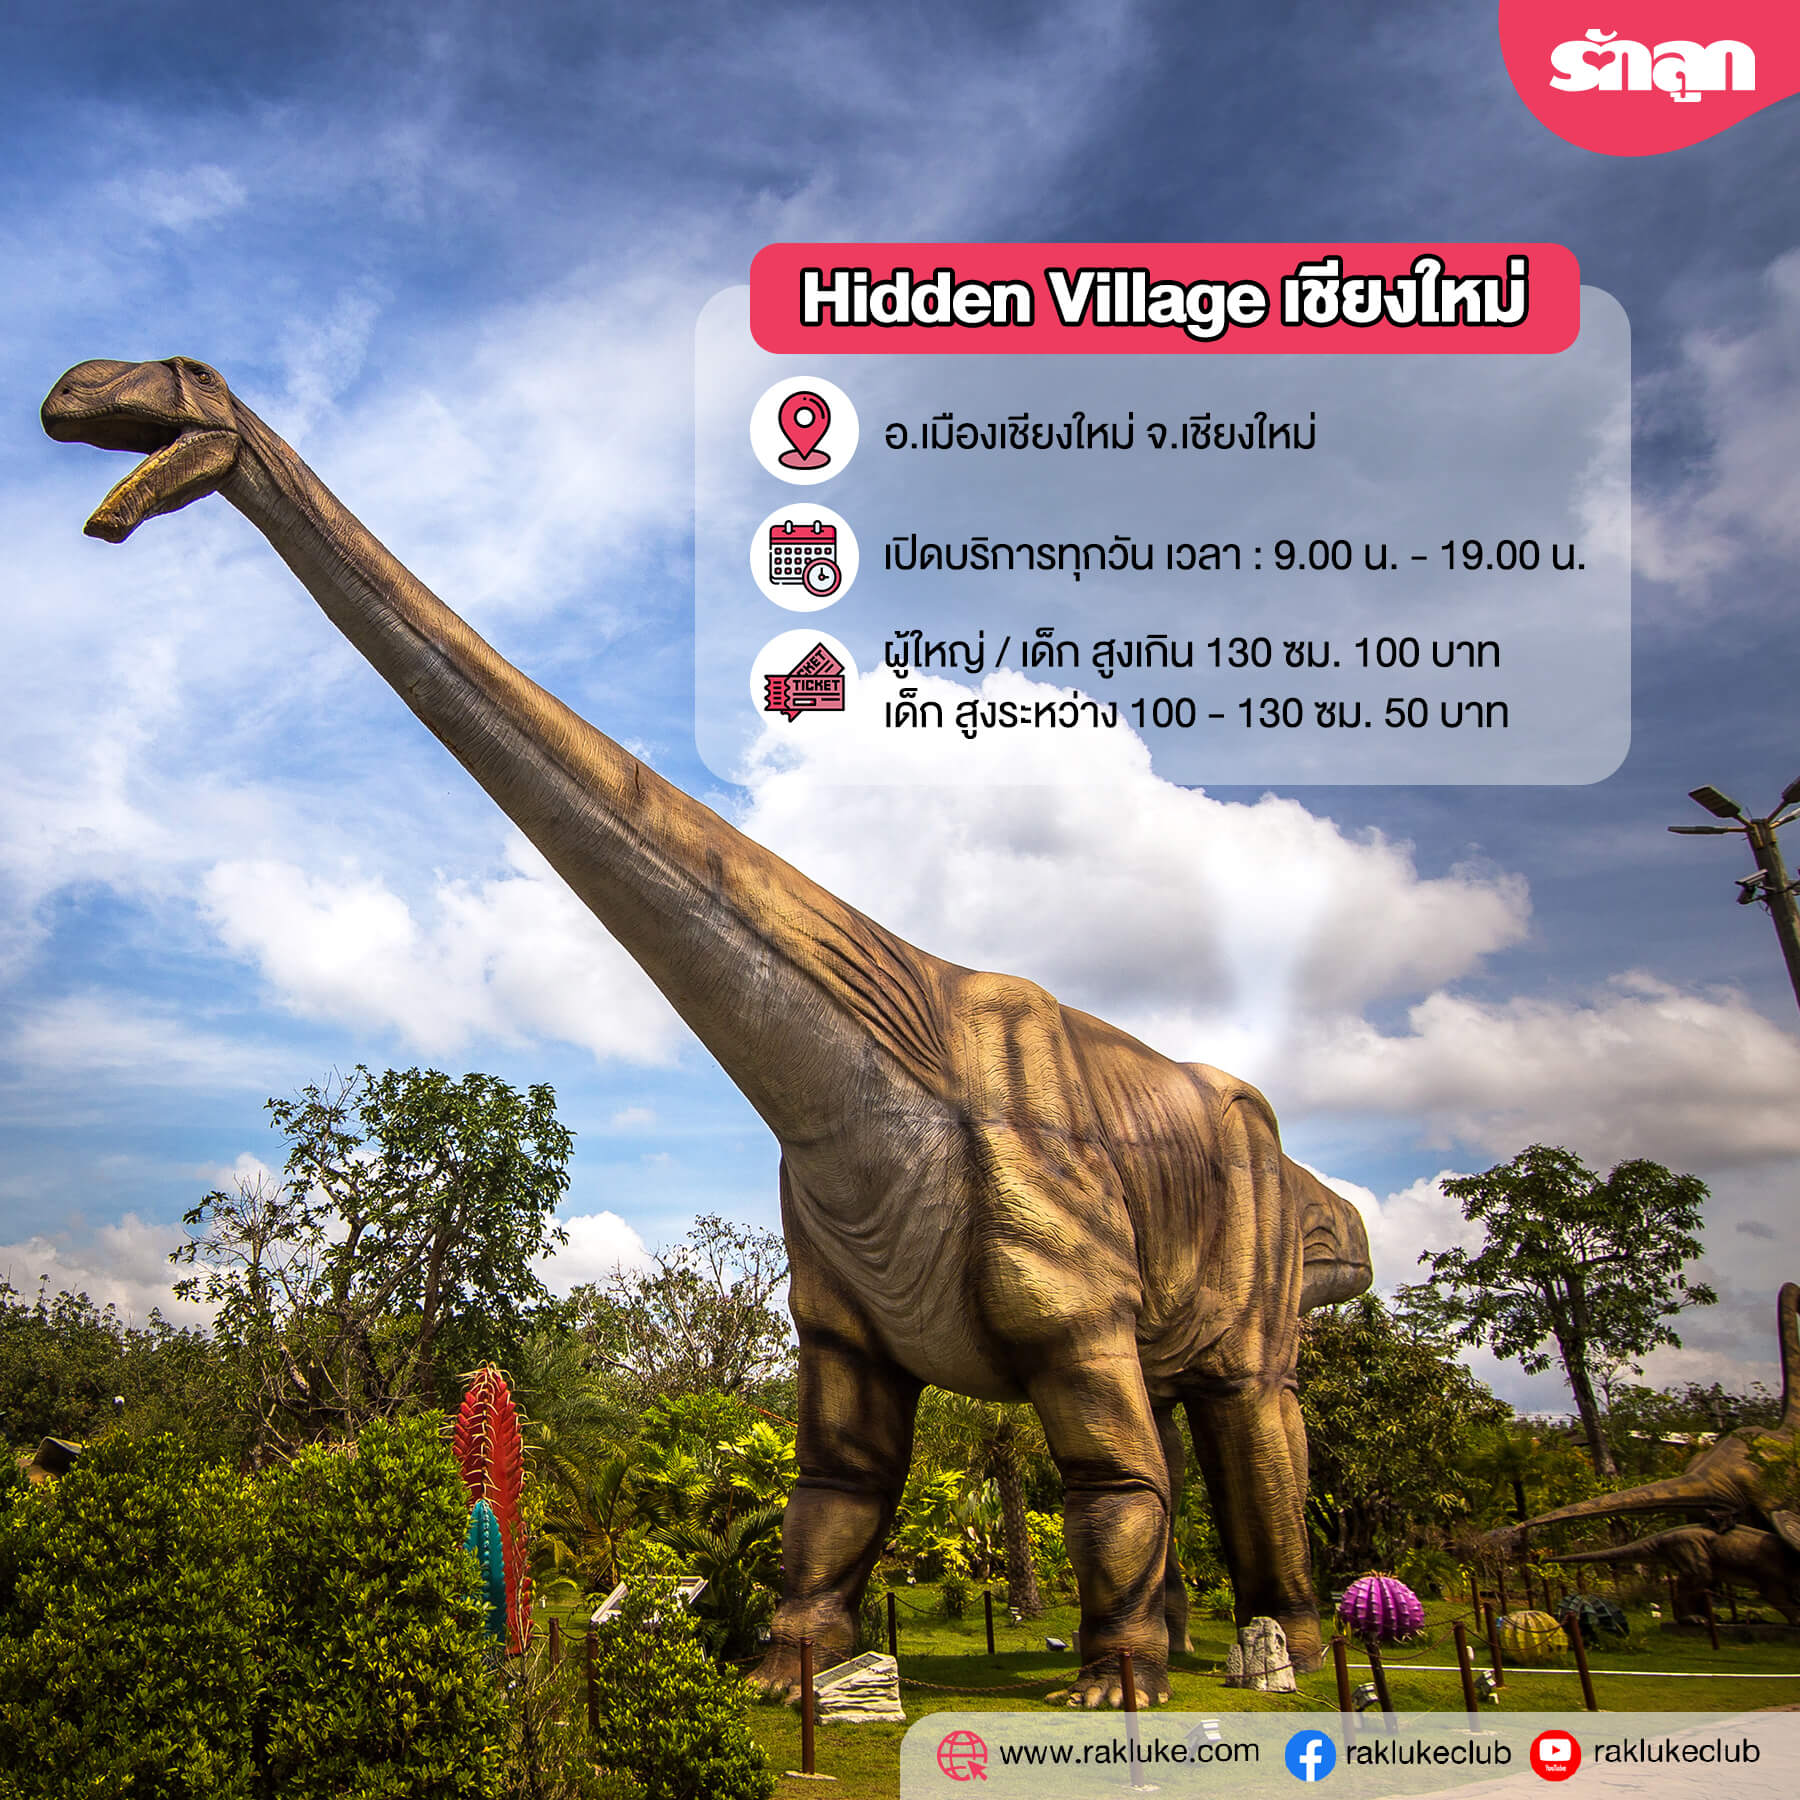 ไดโนเสาร์-พิพิธภัณฑ์ไดโนเสาร์-แหล่งท่องเที่ยวในประเทศไทย-แหล่งท่องเที่ยวเกี่ยวกับไดโนเสาร์-แหล่งท่องเที่ยวชมไดโนเสาร์-Hidden Village เชียงใหม่-Amazing Dinosaur เขาค้อ-พิพิธภัณฑ์ไดโนเสาร์ภูเวียง-พิพิธภัณฑ์สิรินธร-หุบเขาไดโนเสาร์ สวนนงนุช พัทยา-สวนนงนุช พัทยา-พิพิธภัณฑ์ไดโนเสาร์ปทุมธานี-ไดโนเสาร์ สวนสยาม